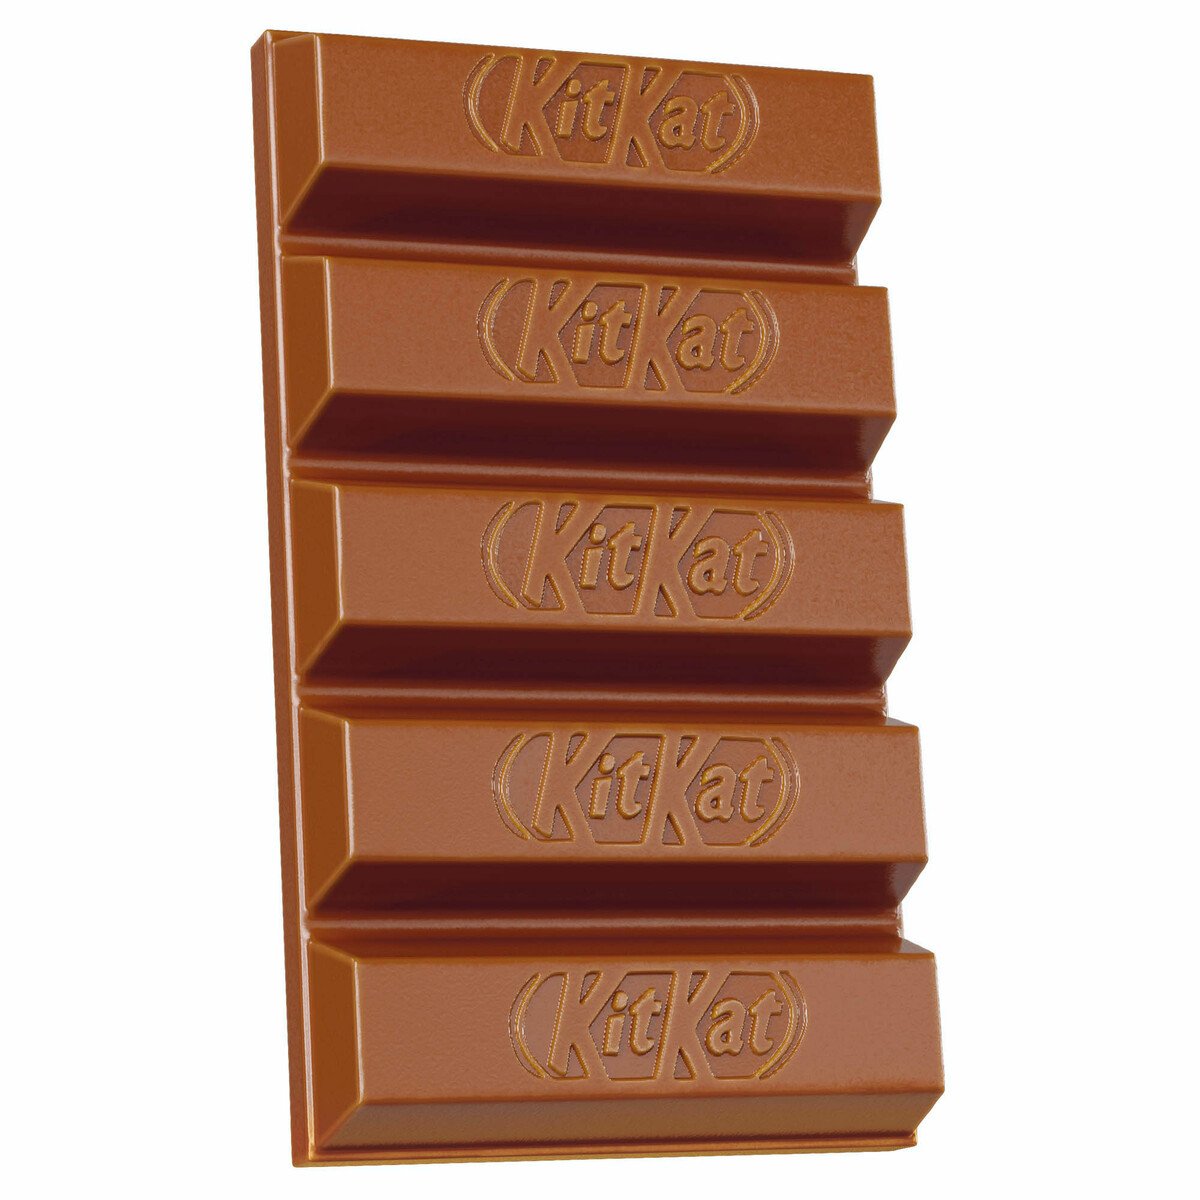 Nestle KitKat 5 Finger Caramelized Hazelnut Chocolate Wafer 40 g